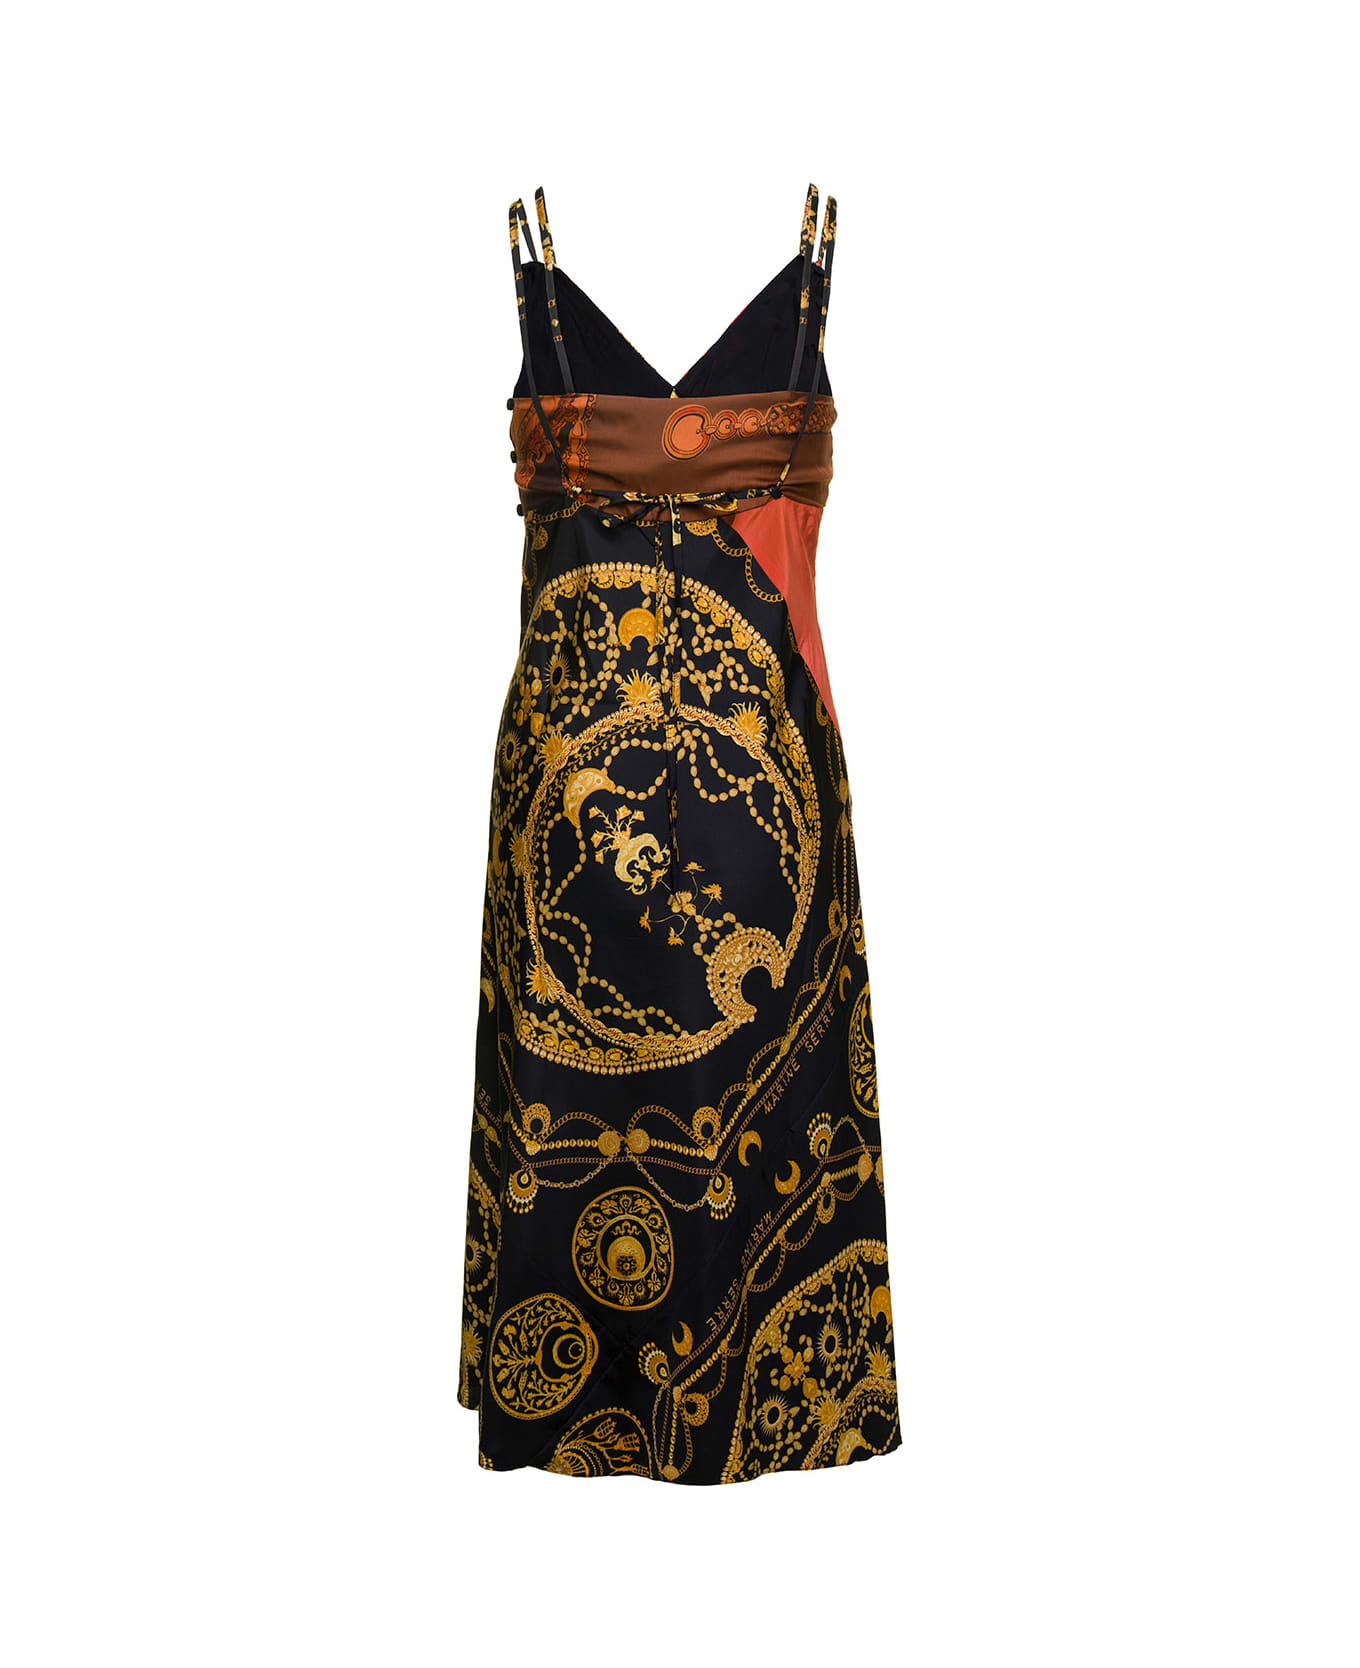 Marine Serre Midi Multicolor Dress With Double Straps And Ornament Jewelry Print In Silk Woman - Multicolor